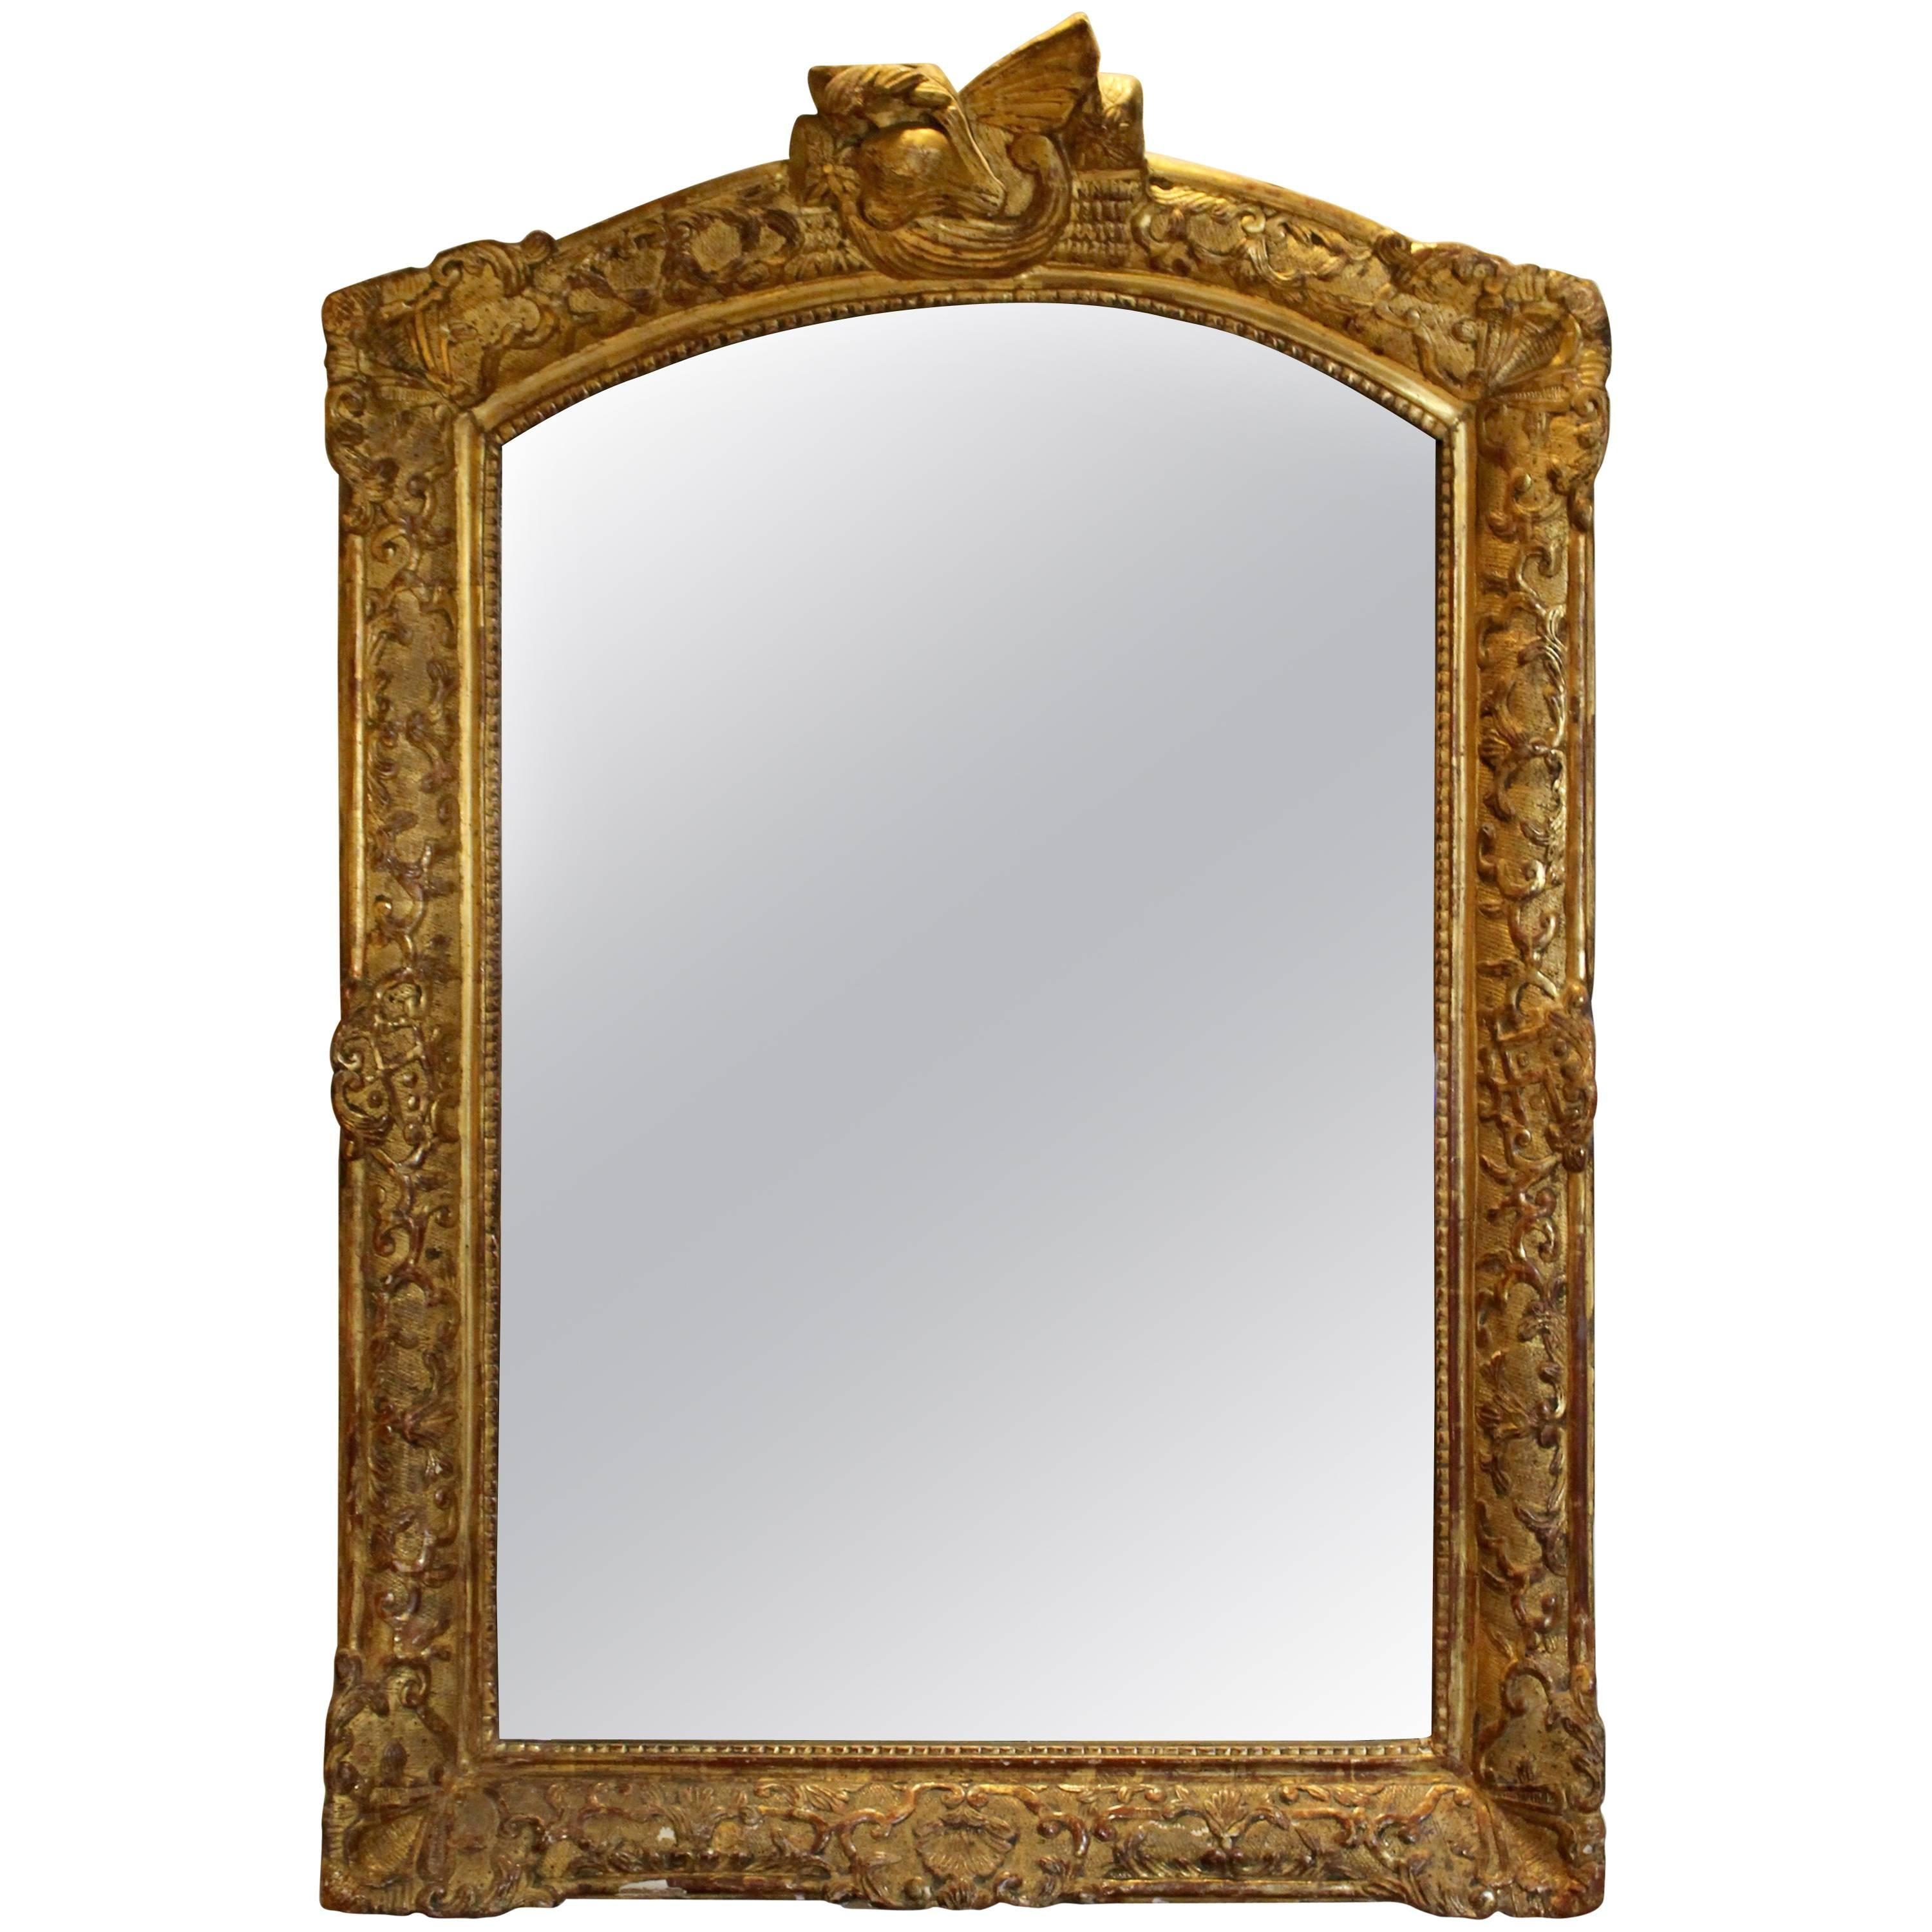 Miroir en bois doré sculpté de style baroque du 18e siècle de la période de la Rgence française